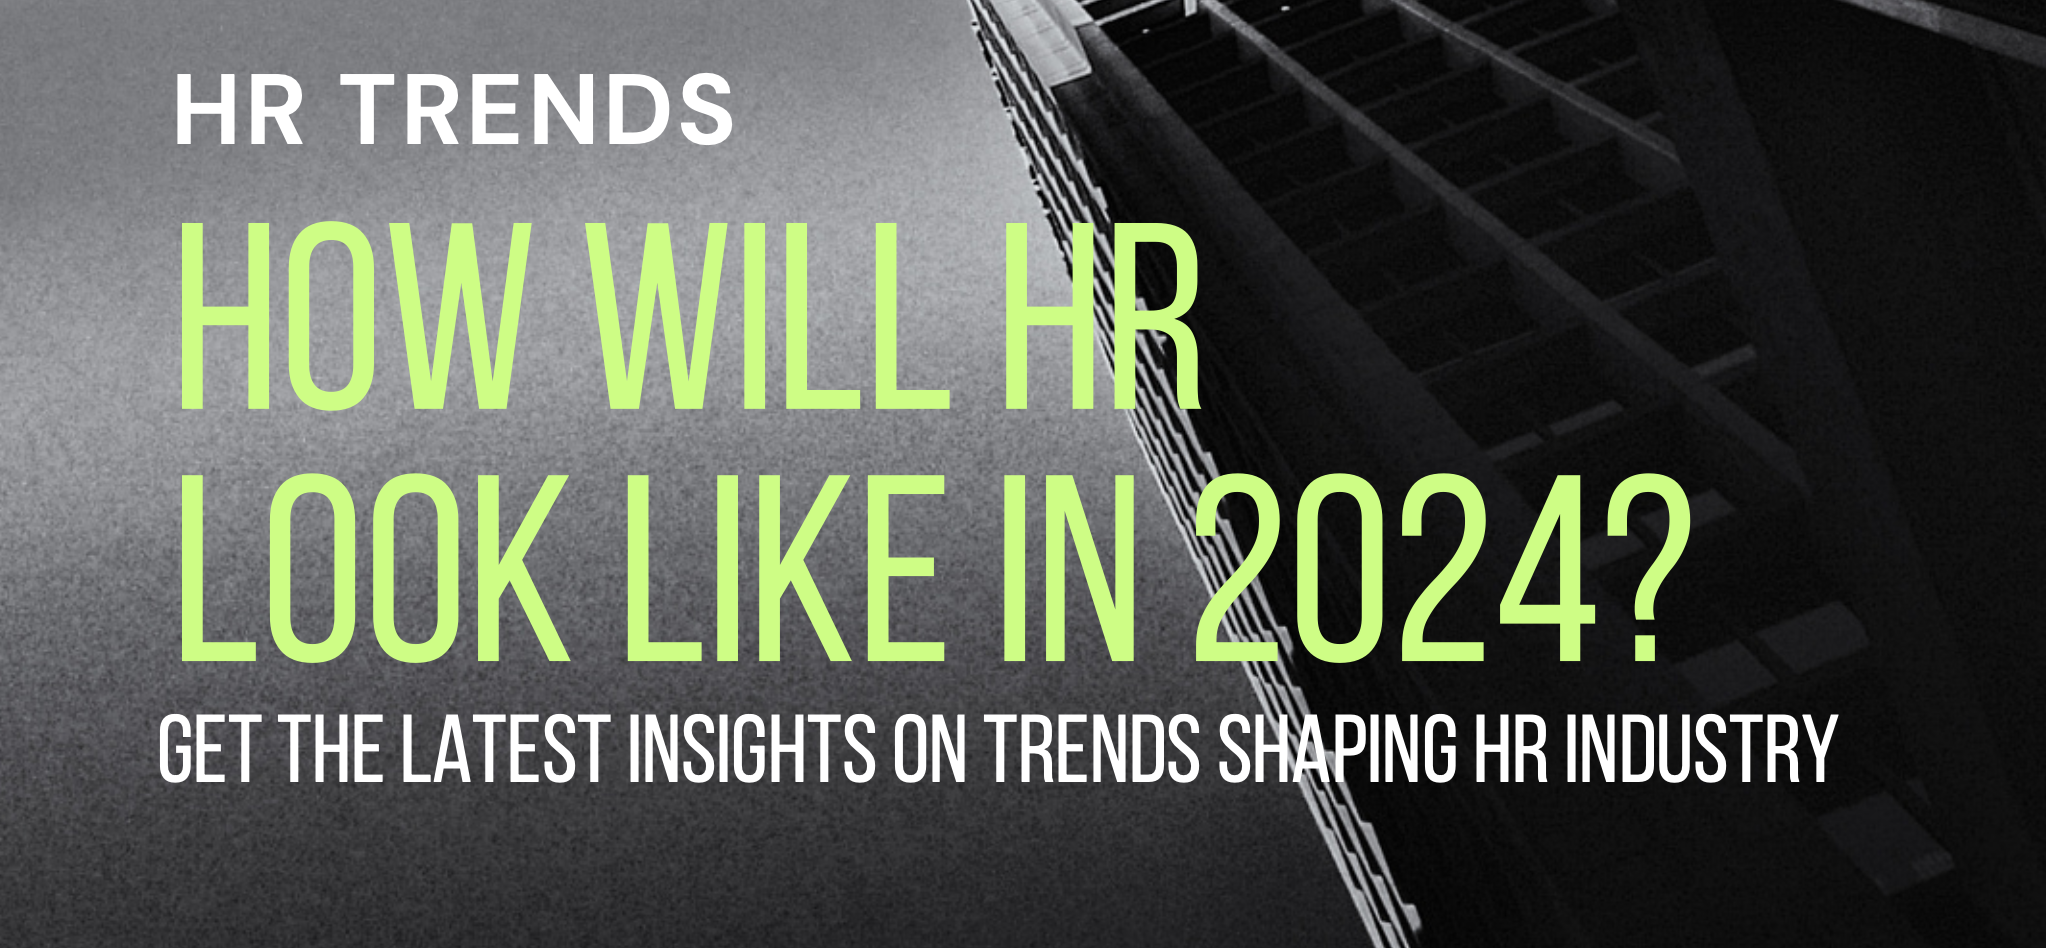 Raport: Jak będzie wyglądał HR w roku 2024?